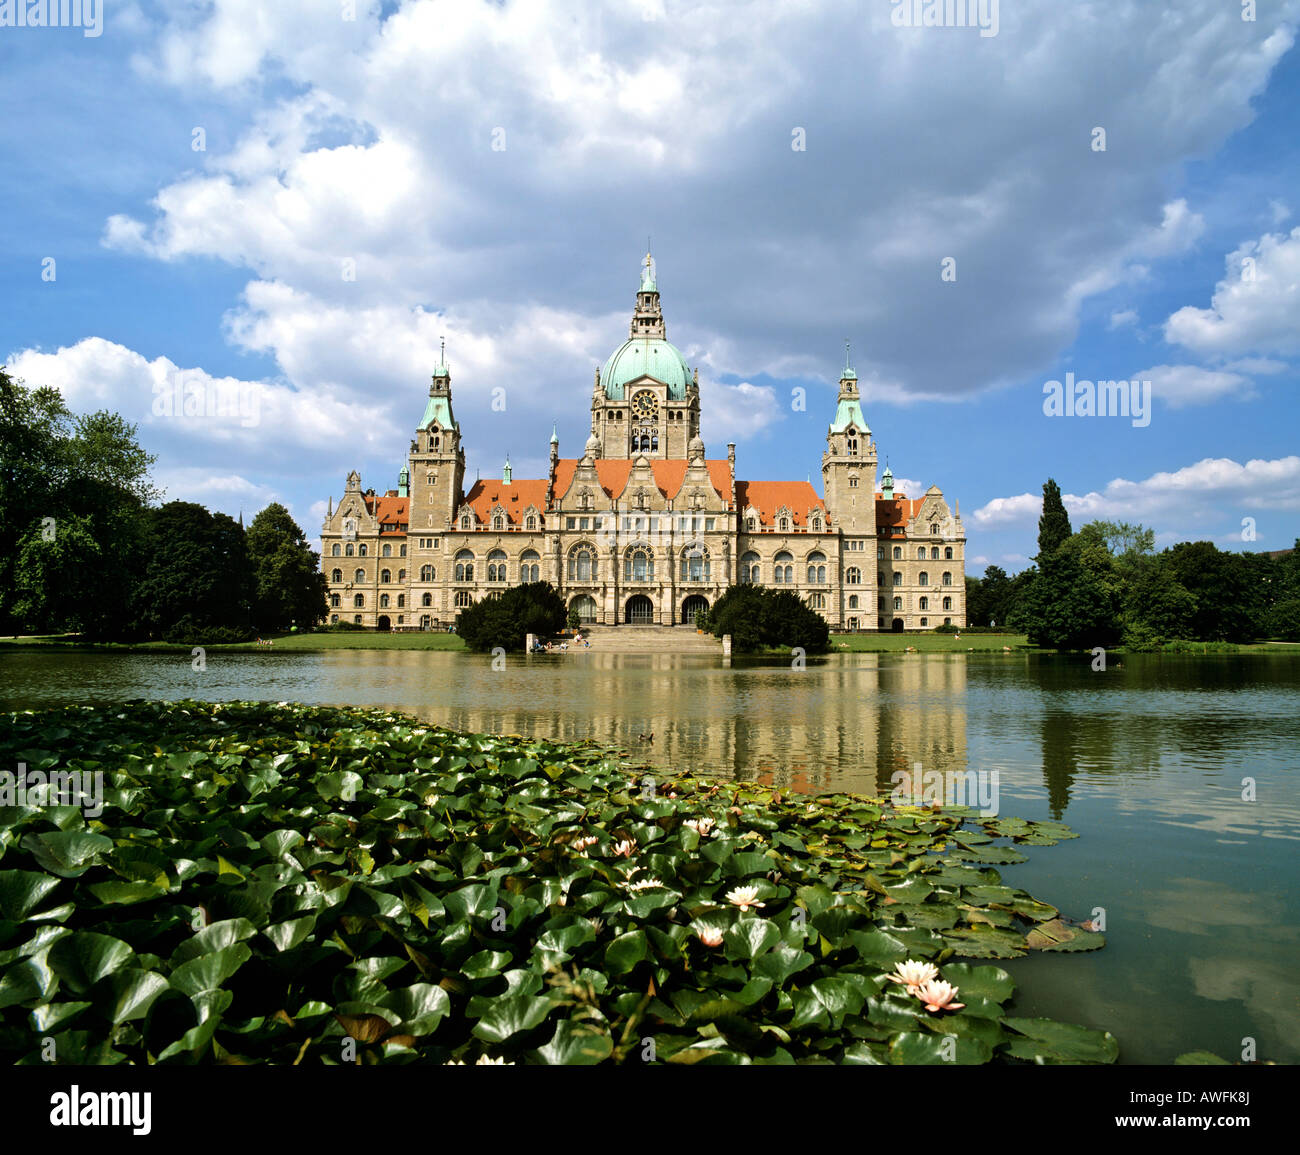 Niedrigeren New City Hall und Maschteich Teich, Hannover, Niedersachsen, Deutschland, Europa Stockfoto